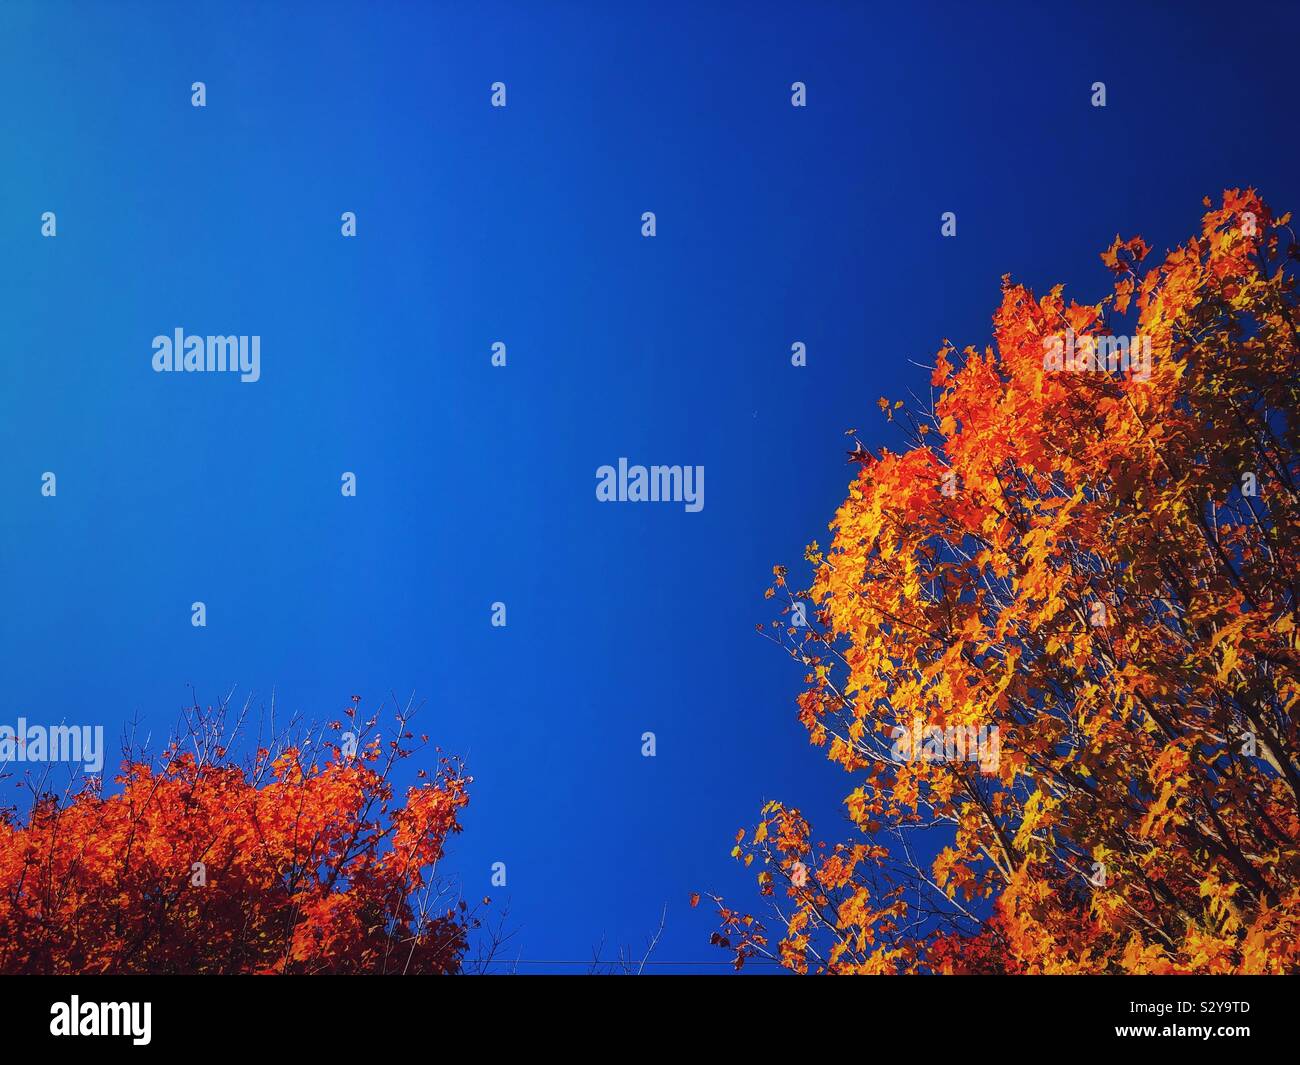 Rosso, arancione e giallo autunno tree tops contro il cielo blu in una giornata di sole Foto Stock